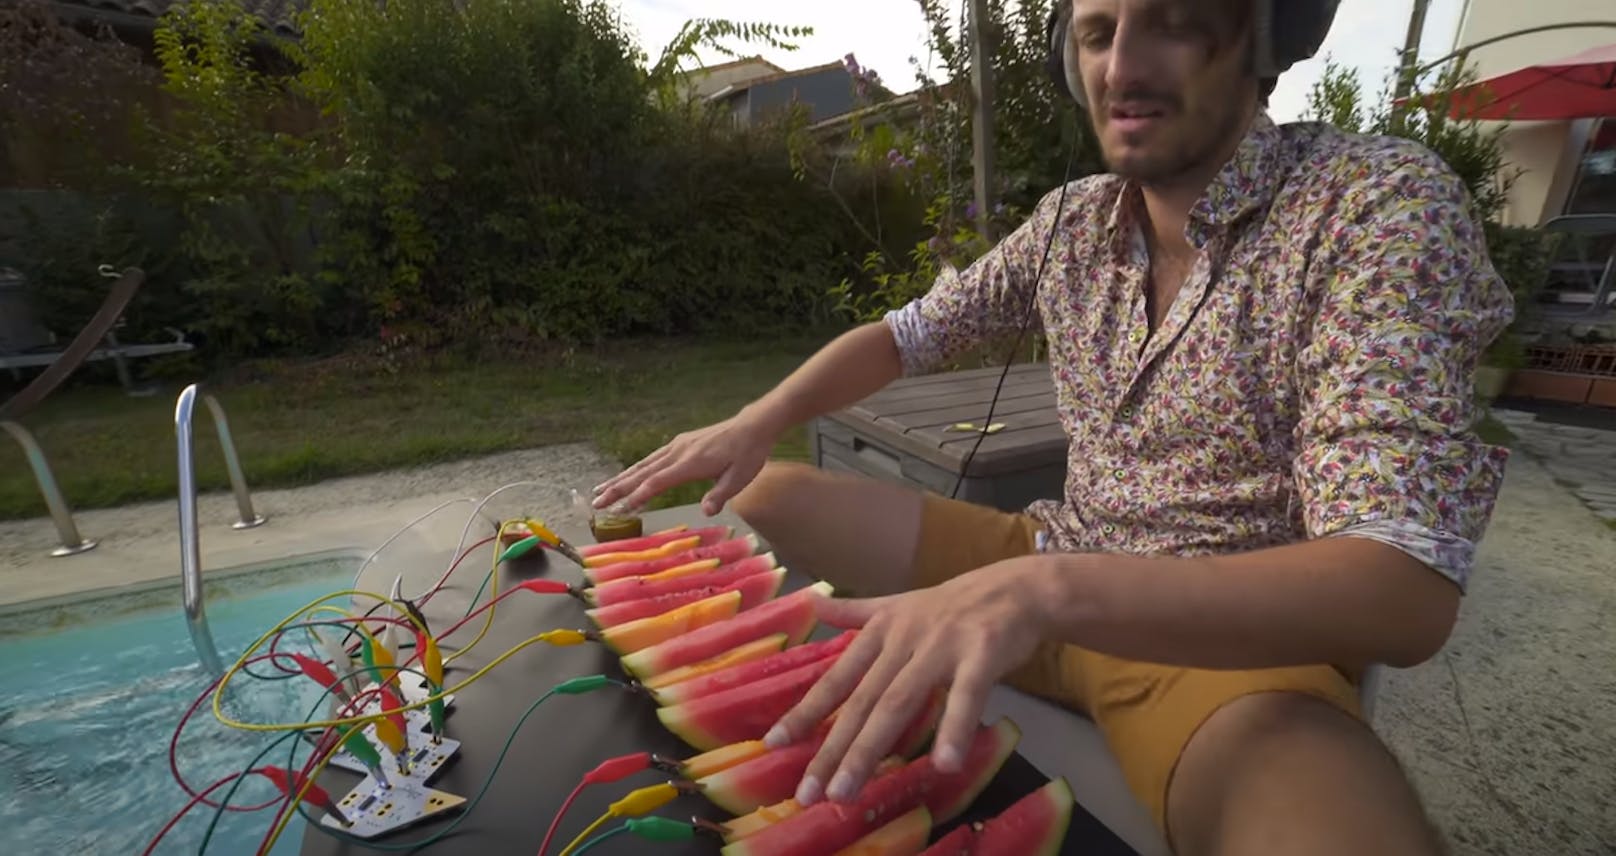 Dieser YouTuber spielt Musik auf Wassermelonen